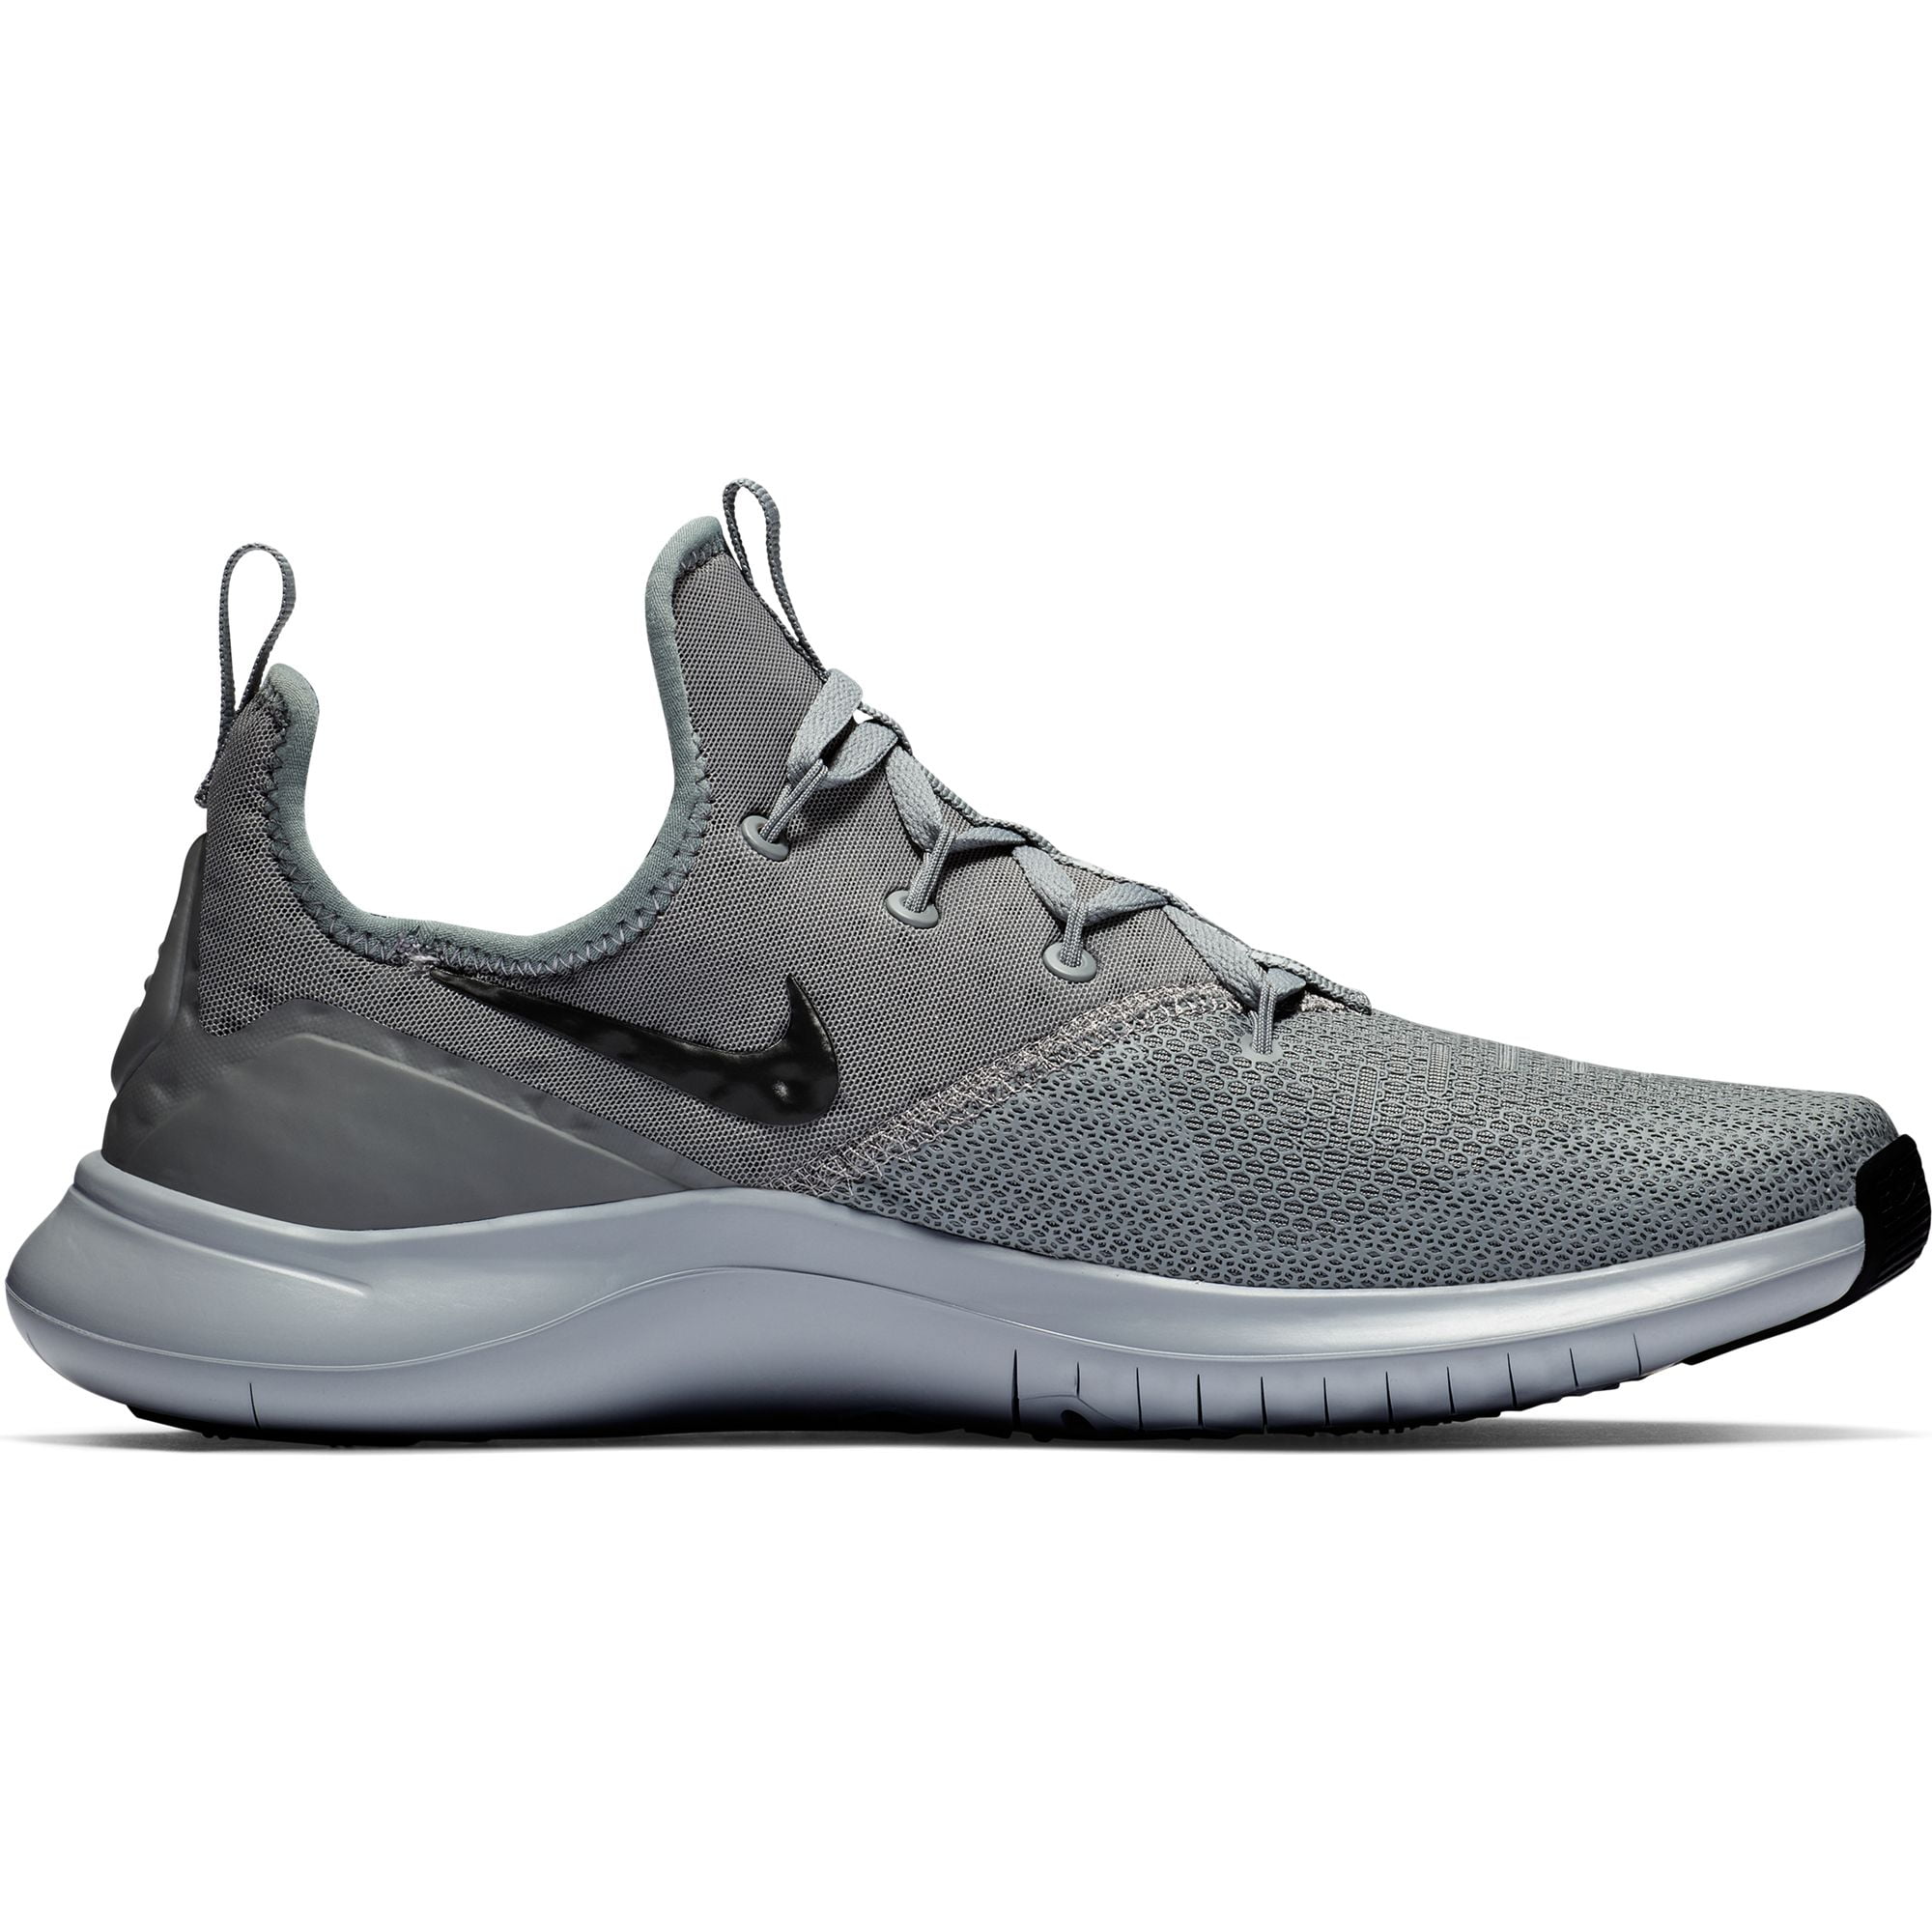 testigo coger un resfriado Línea de visión Men's Nike Free TR 8 Training Shoe - Walmart.com